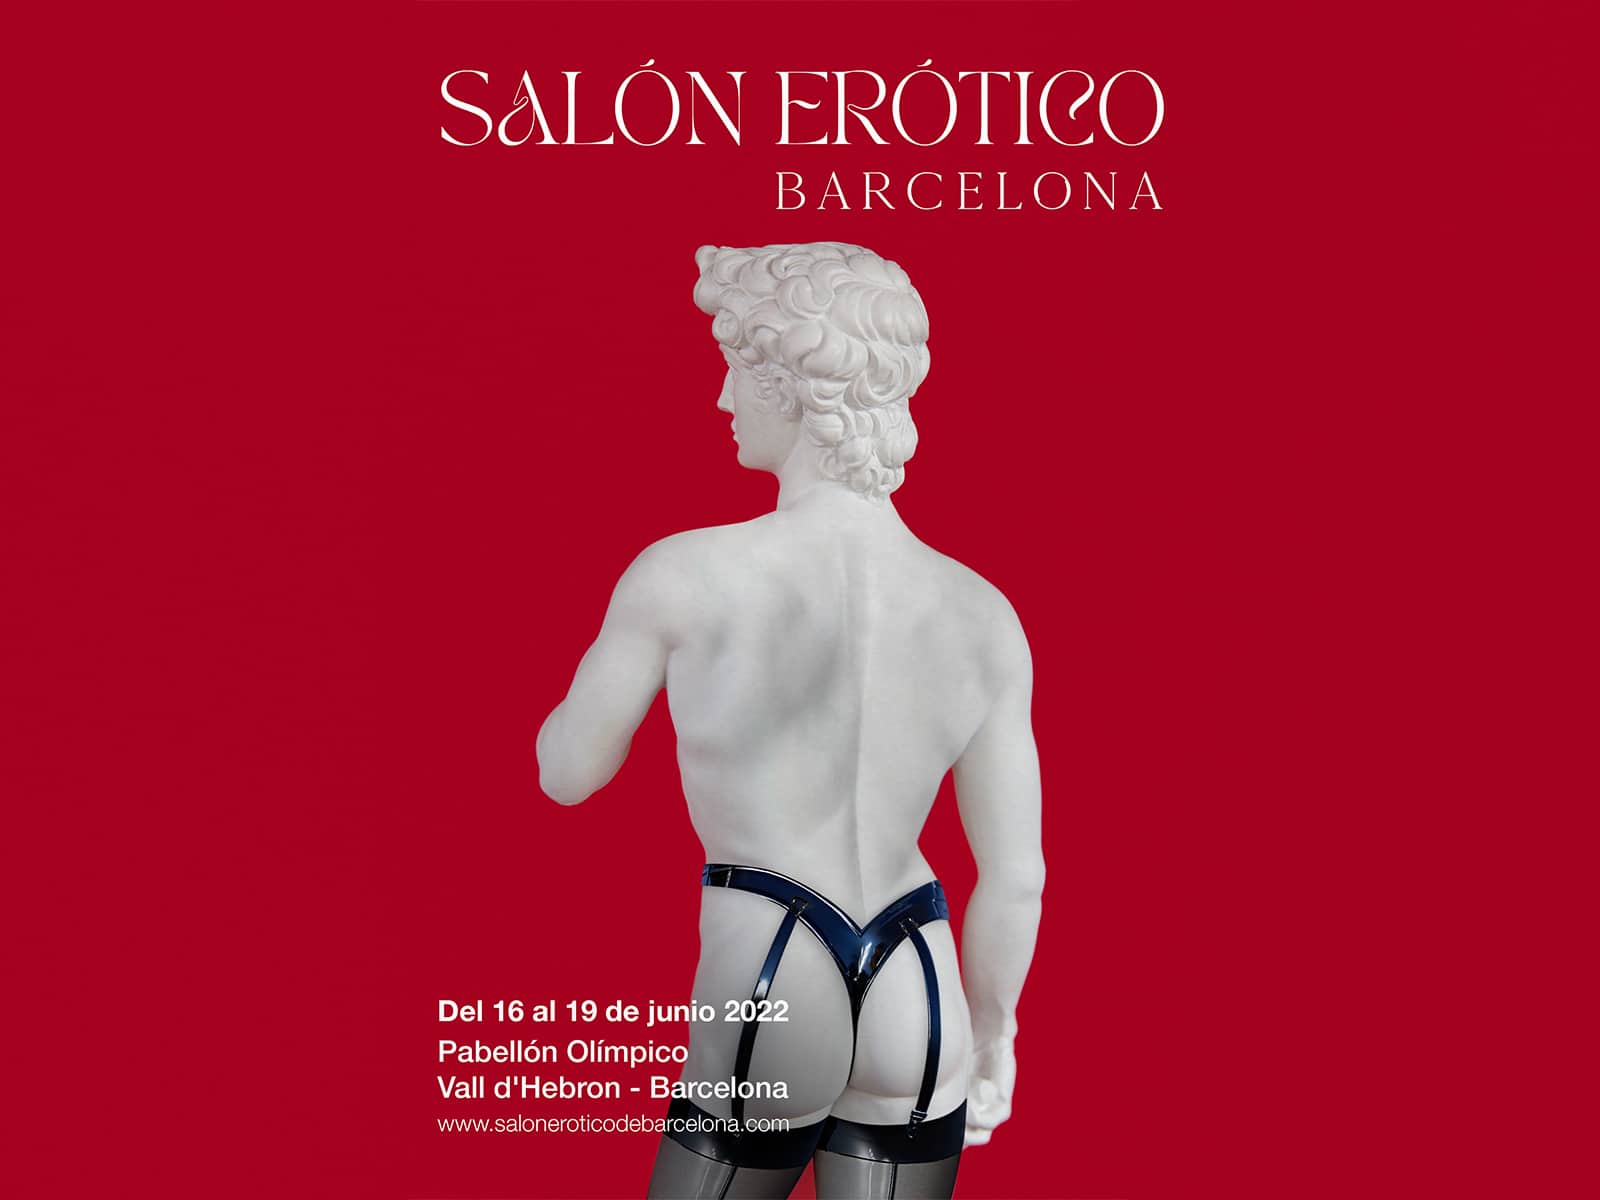 El Salón Erótico de Barcelona vuelve después de tres años